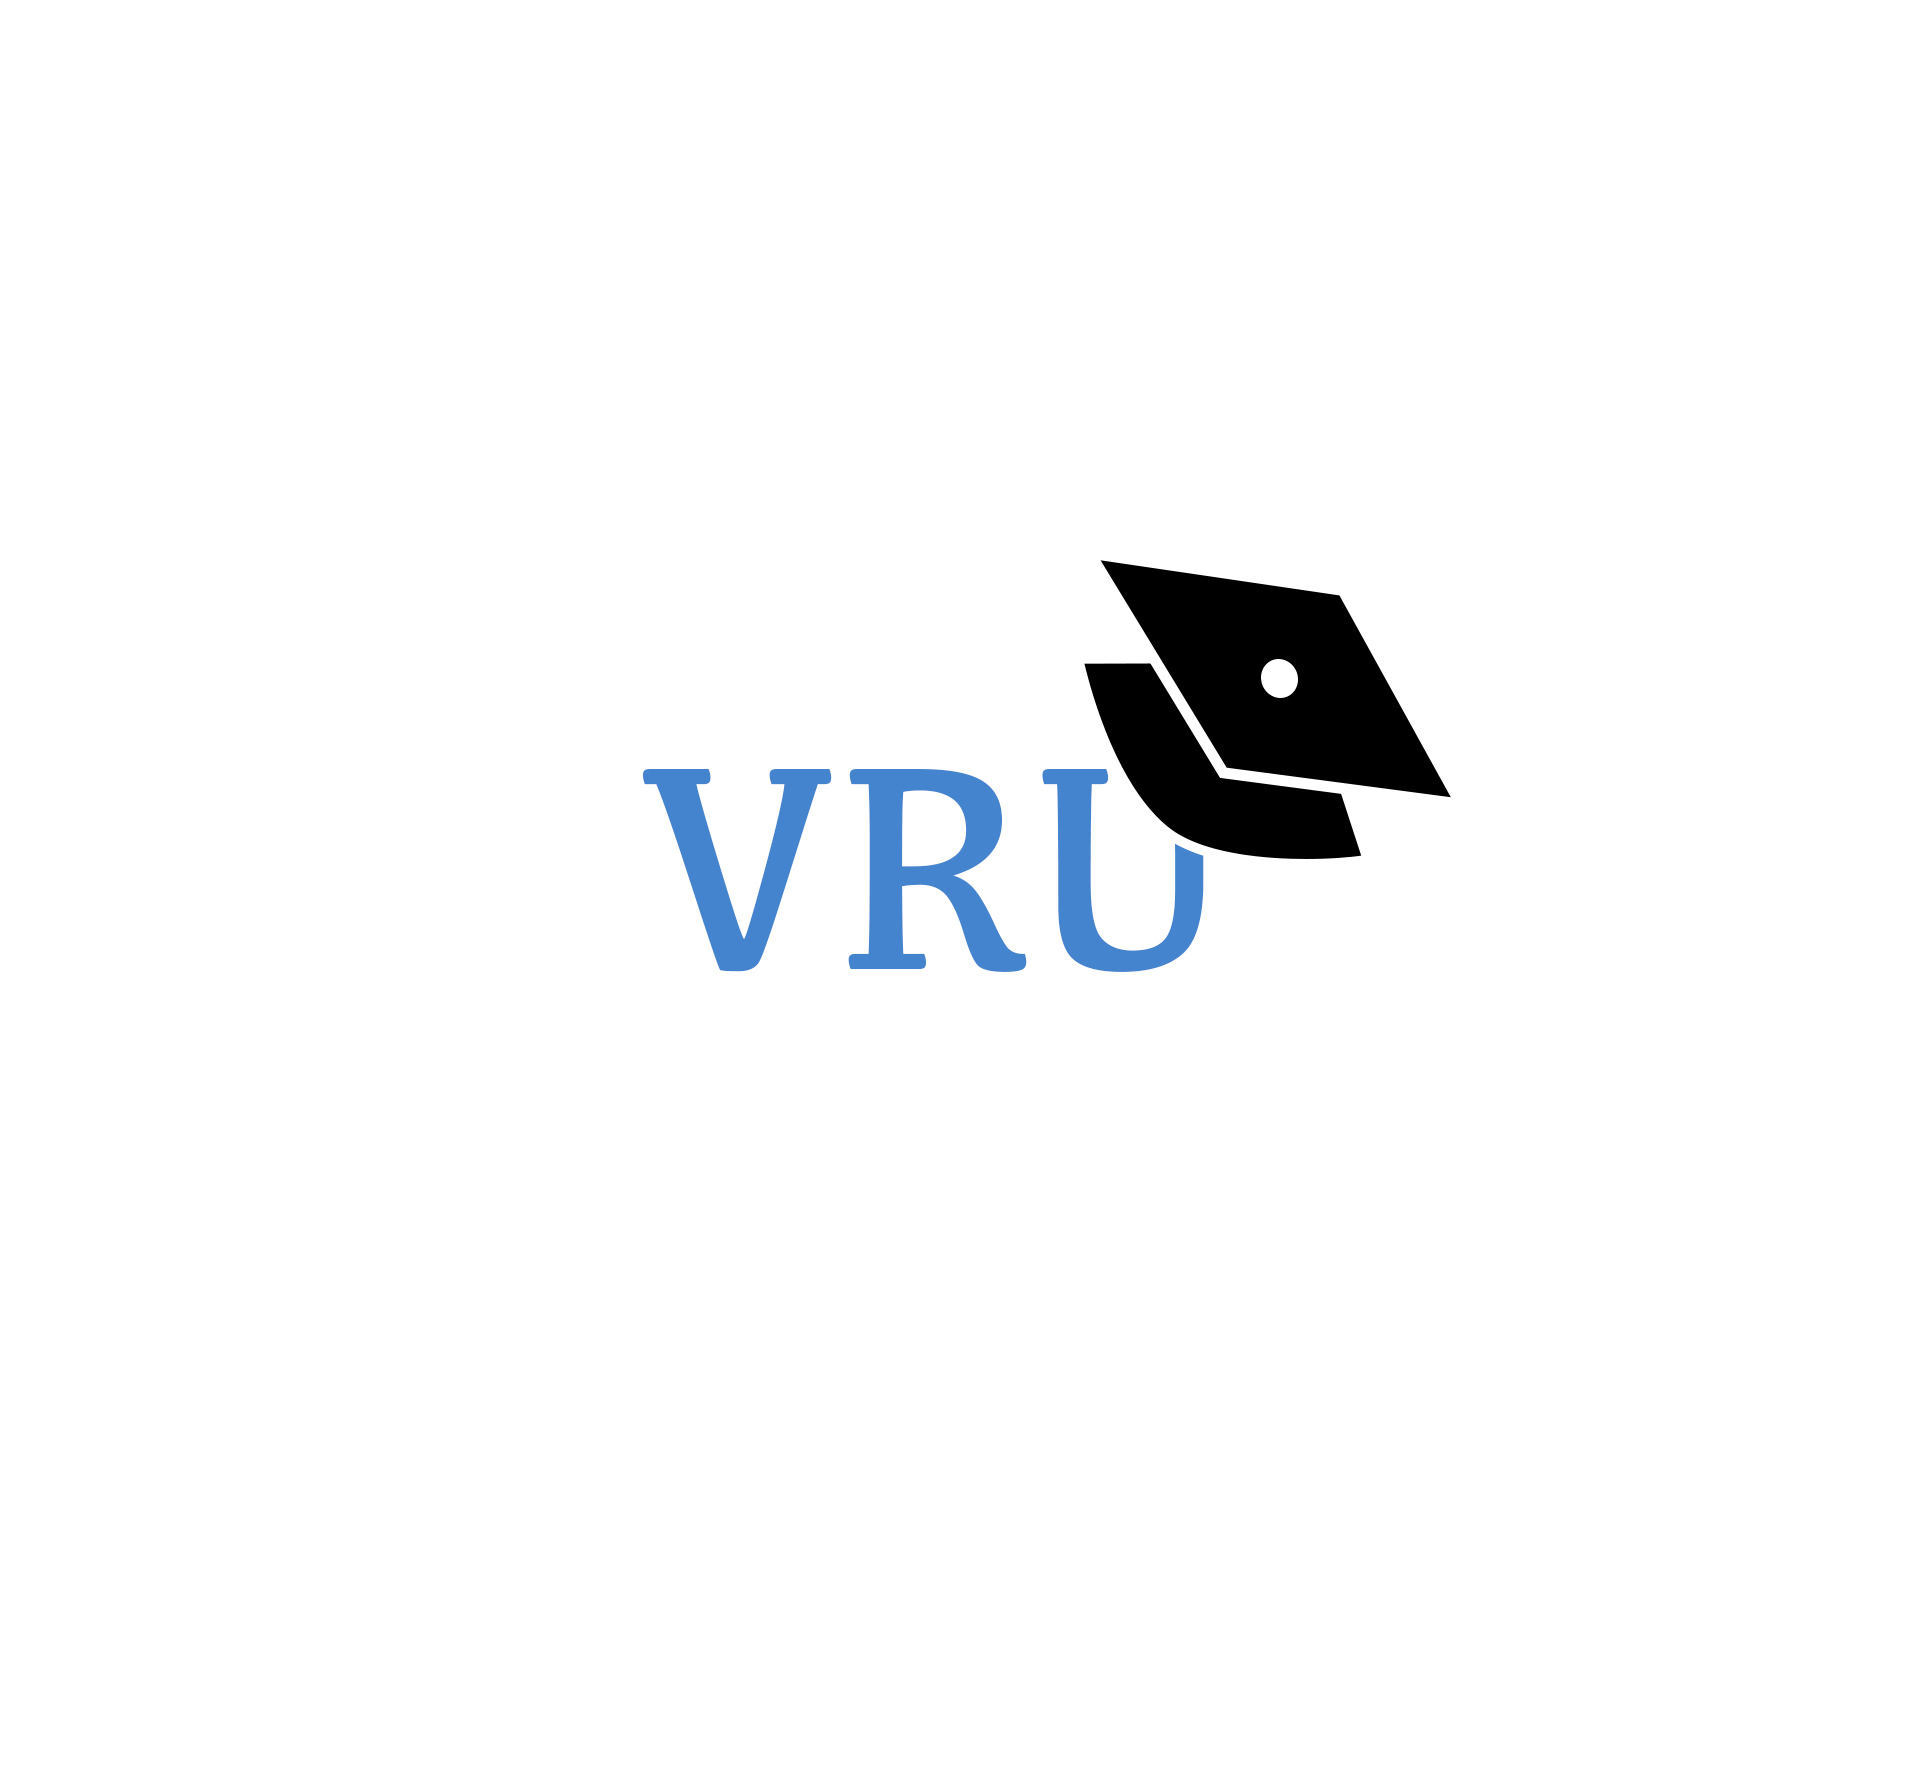 VR University